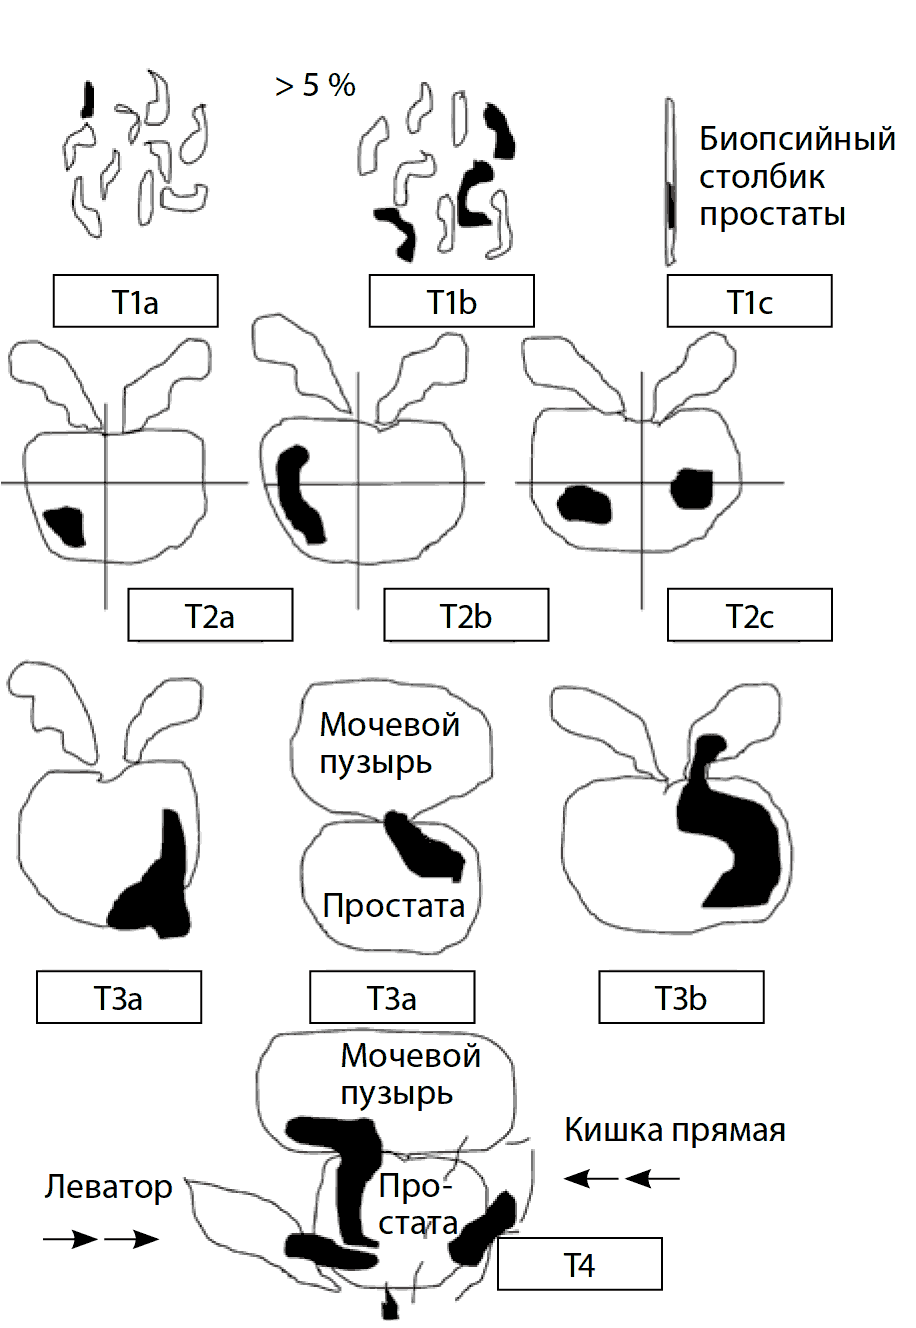   Рис. 8. Схематическая классификация рака предстательной железы по системе TNM (2010 г.)